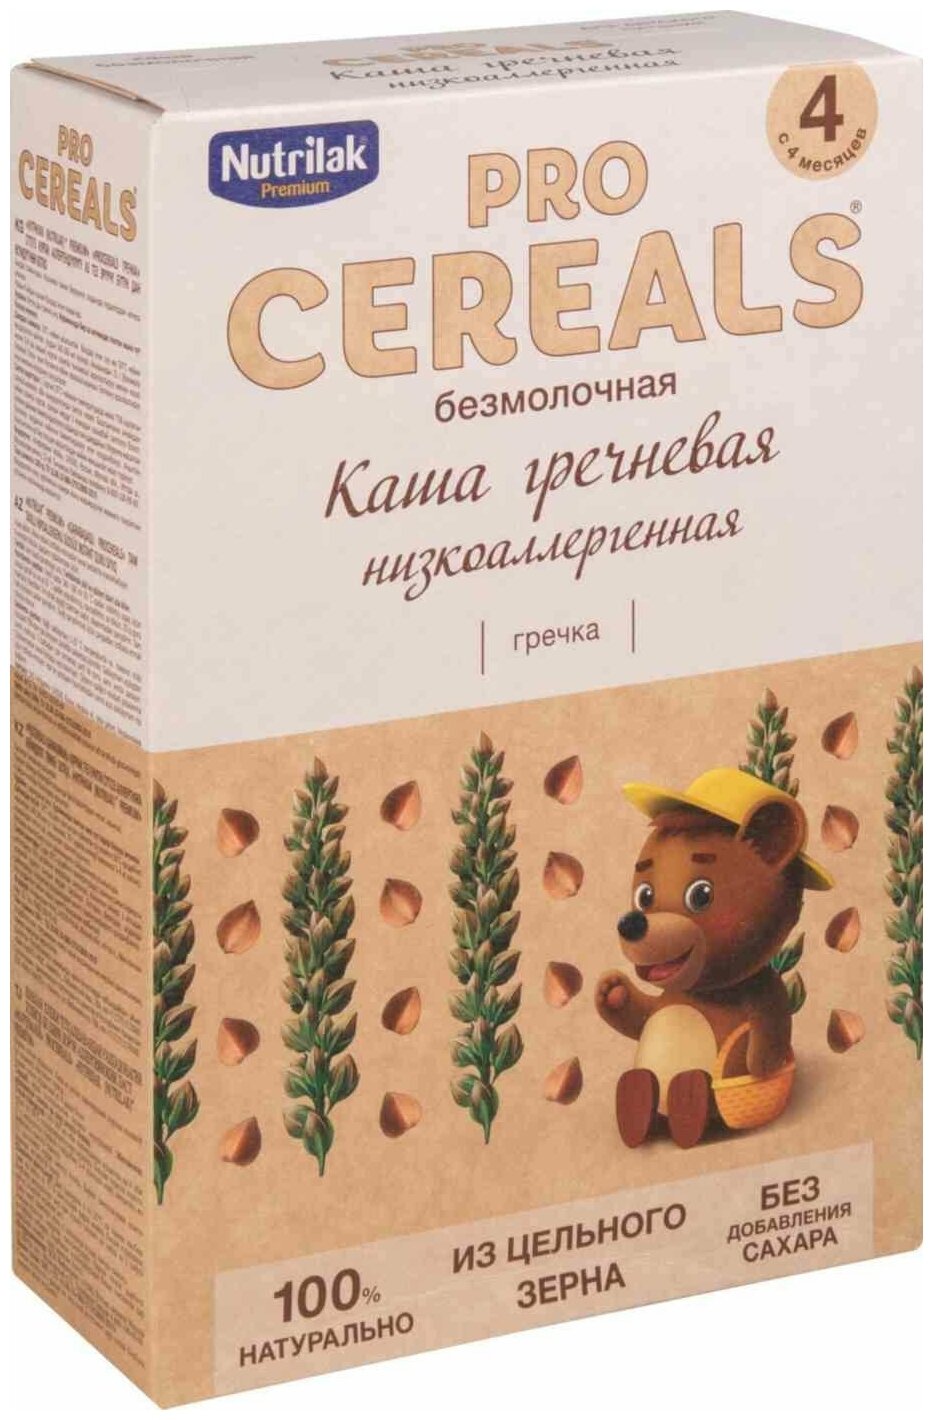 Каша гречневая Nutrilak Premium Pro Cereals цельнозерновая безмолочная, 200гр - фото №15